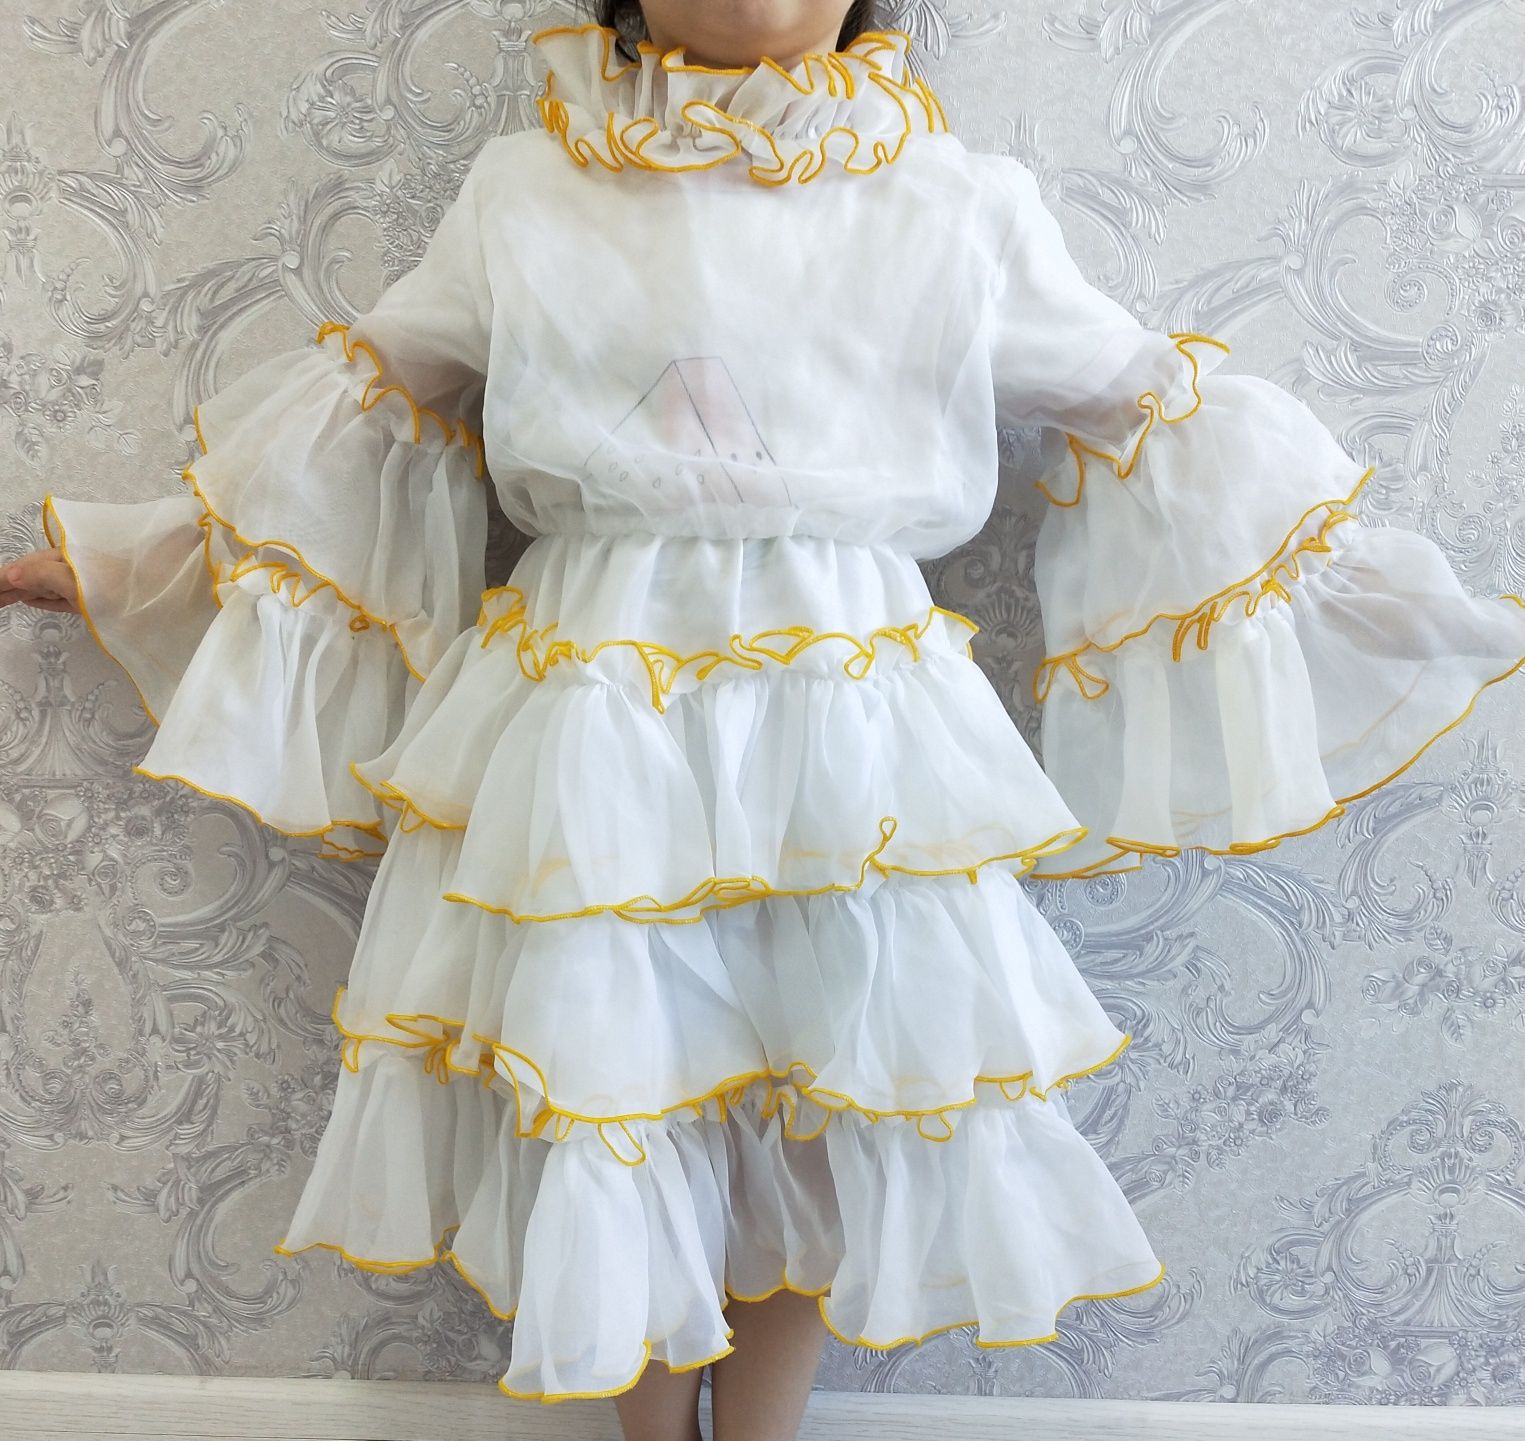 Казахский костюм для девочек Полный комплект